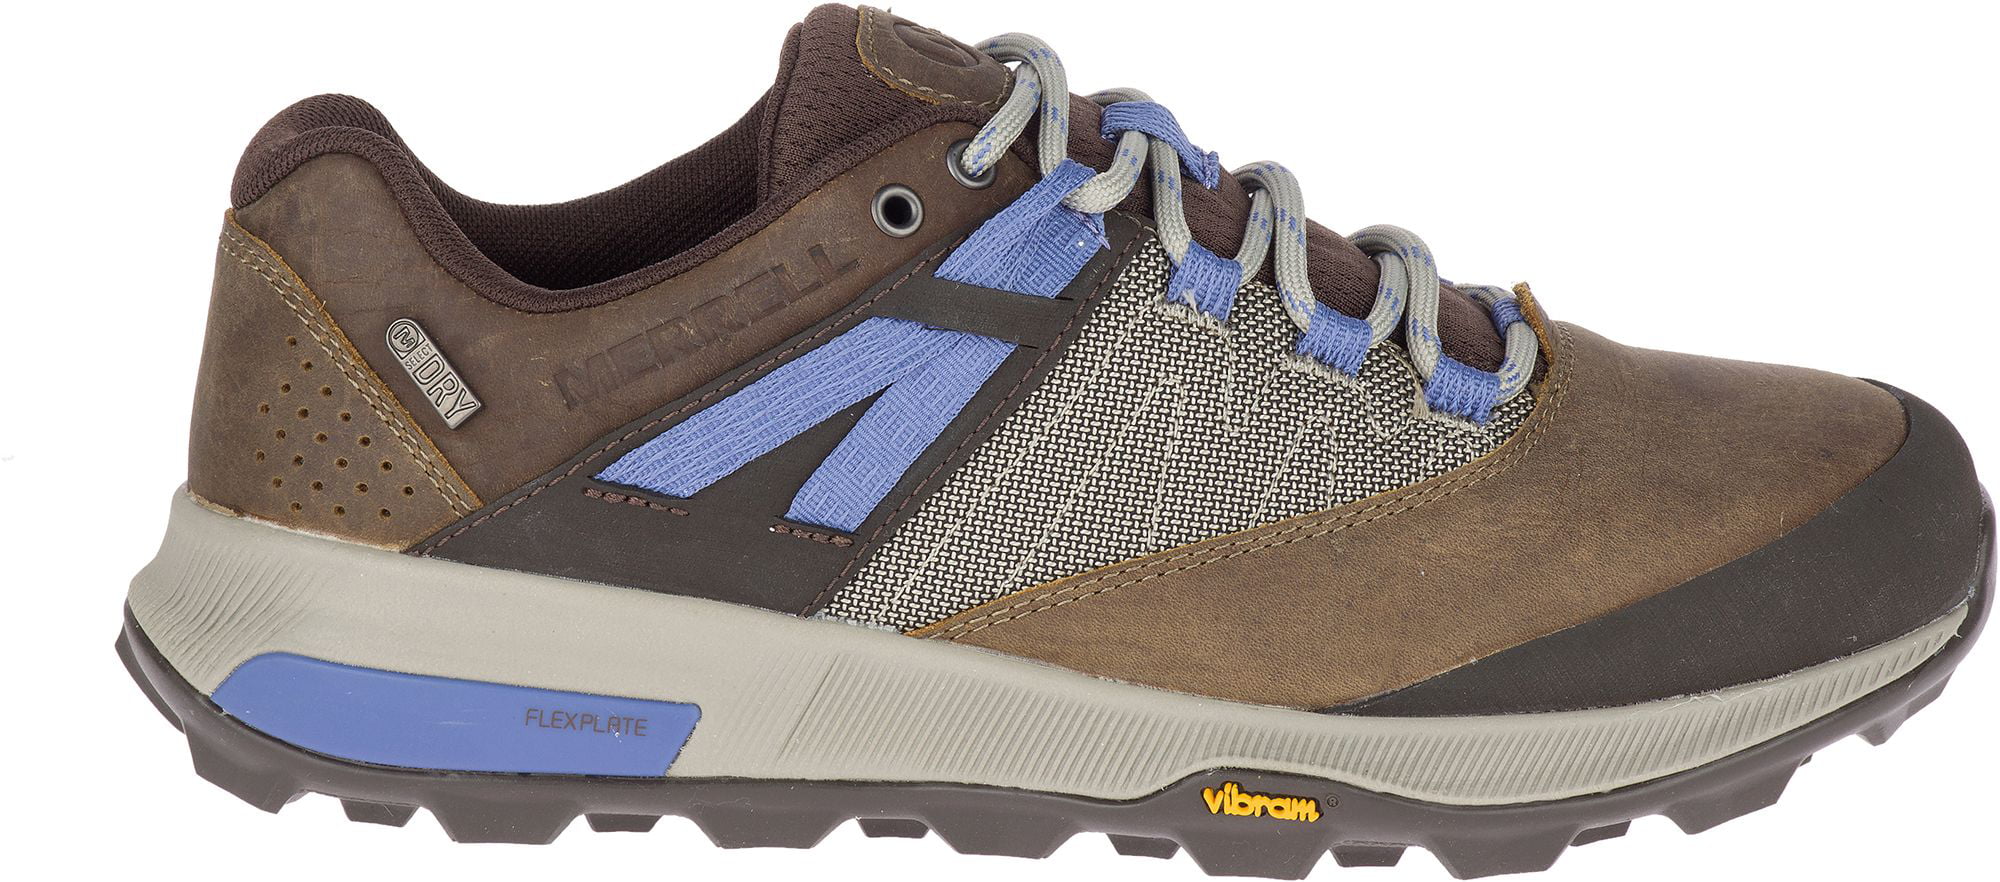 Merrell Zion GTX Mens Green Gore-Tex Waterproof Walking Hiking Shoes Size 8-11 